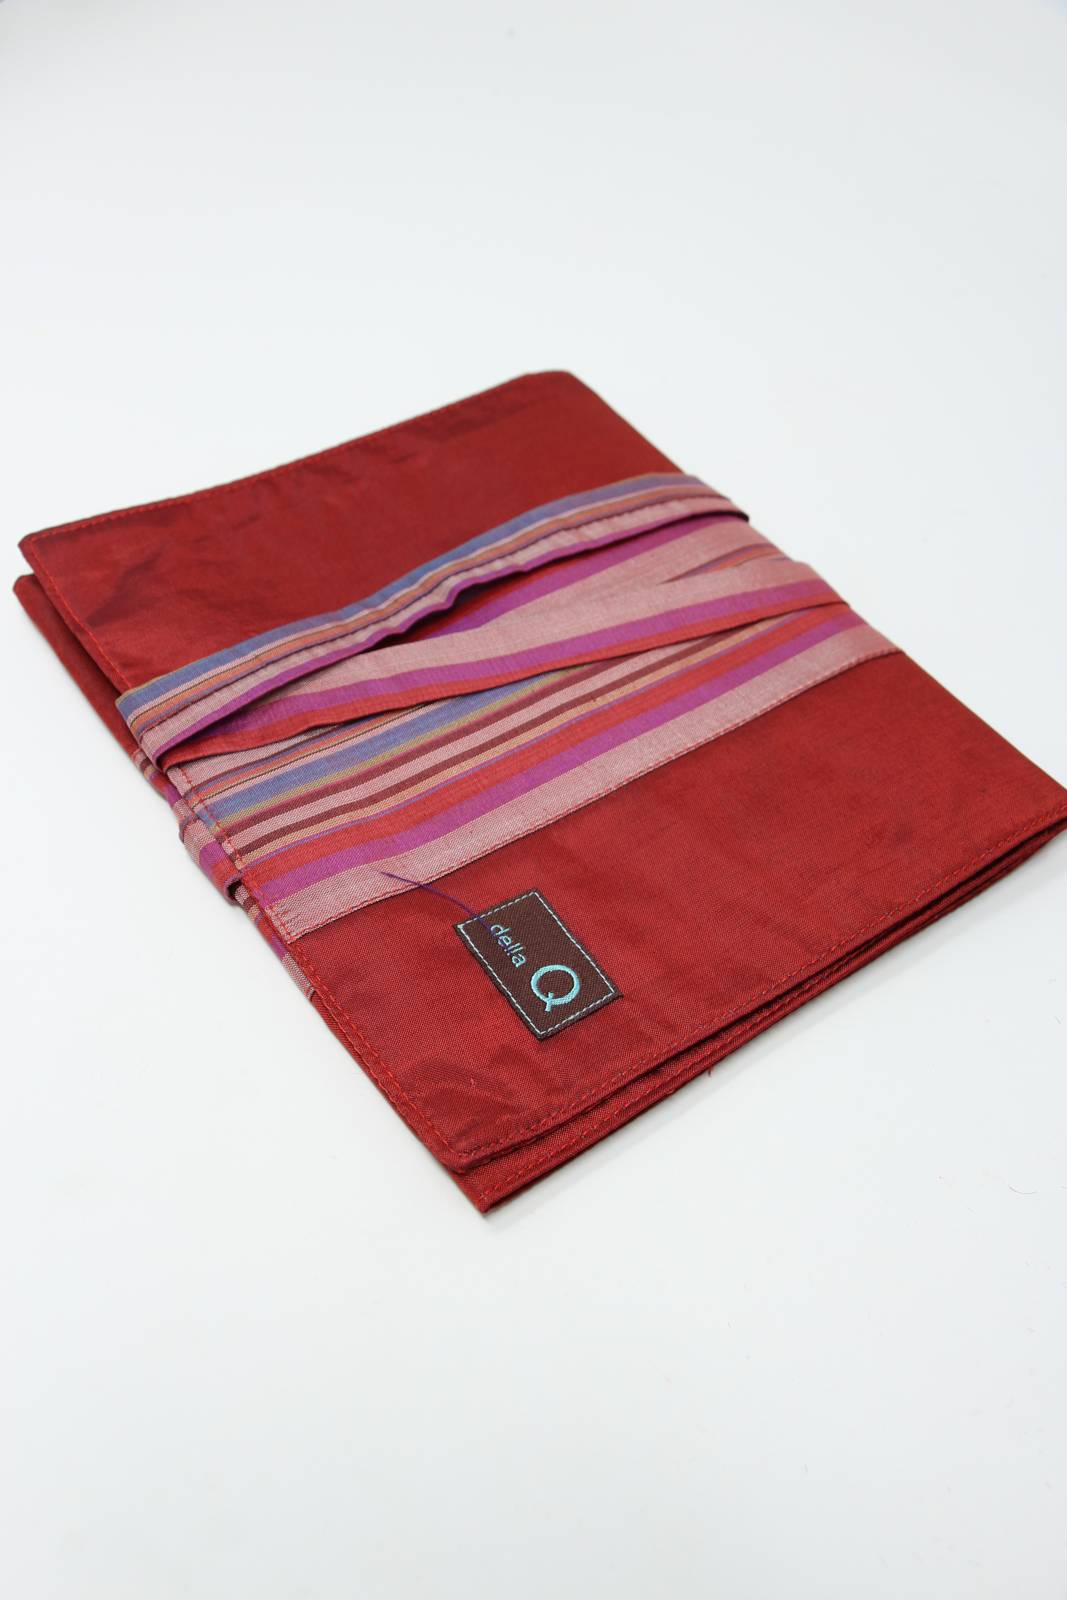 Della Q Crochet Roll Case in Red Stripe (Poly Silk)